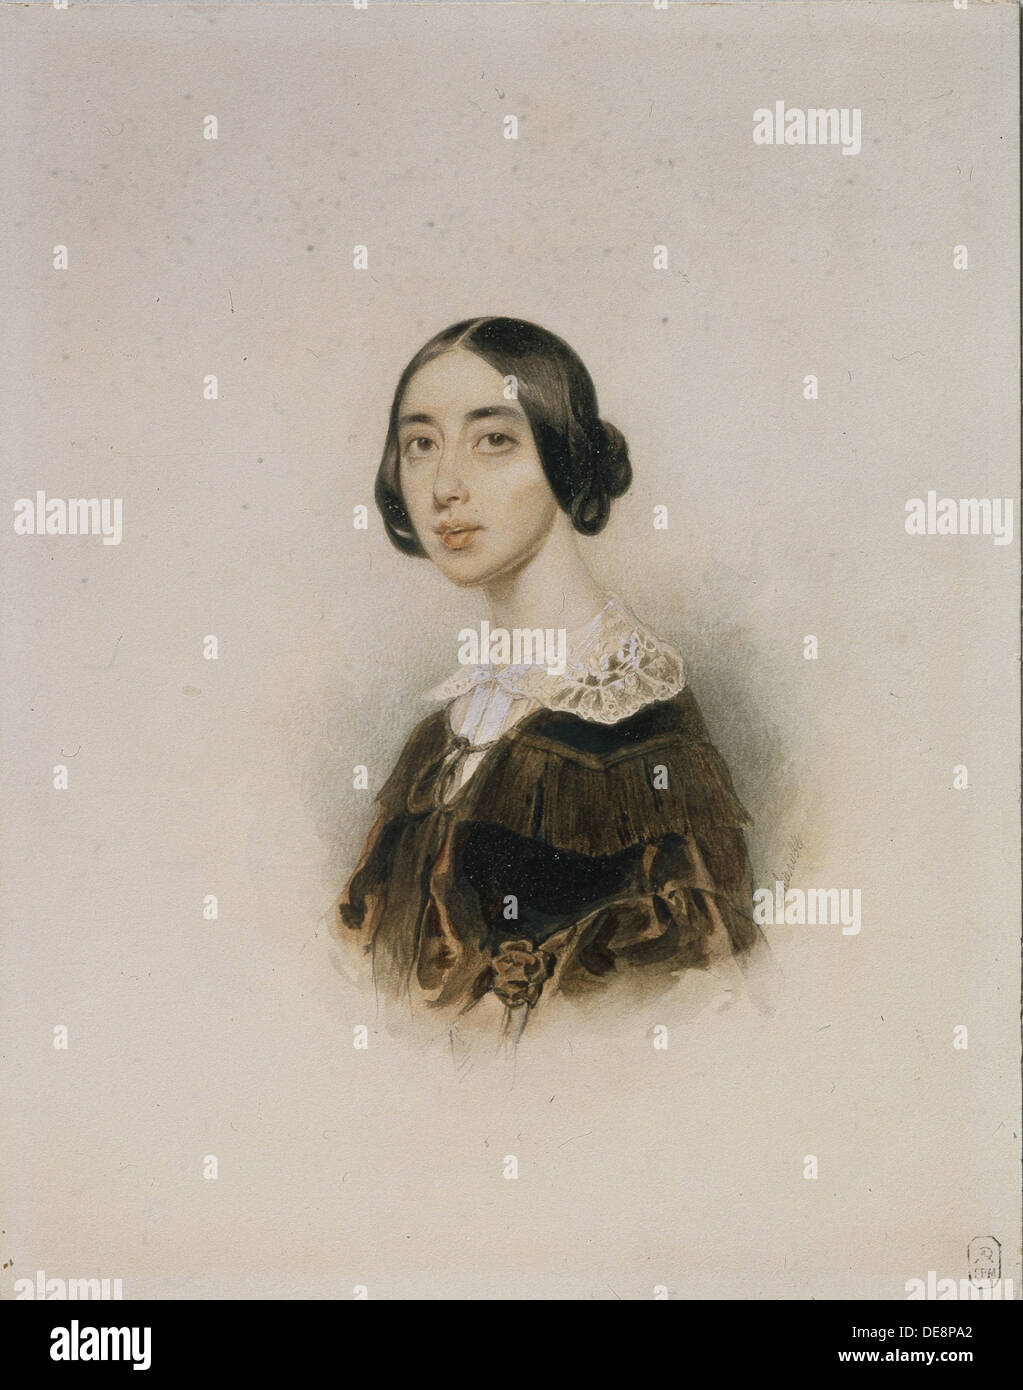 Portrait de la chanteuse et compositeur Michelle Pauline Viardot-García (1821-1910), 1843-1845. Artiste : Sokolov, Piotr Fiodorovitch (1791-1848) Banque D'Images